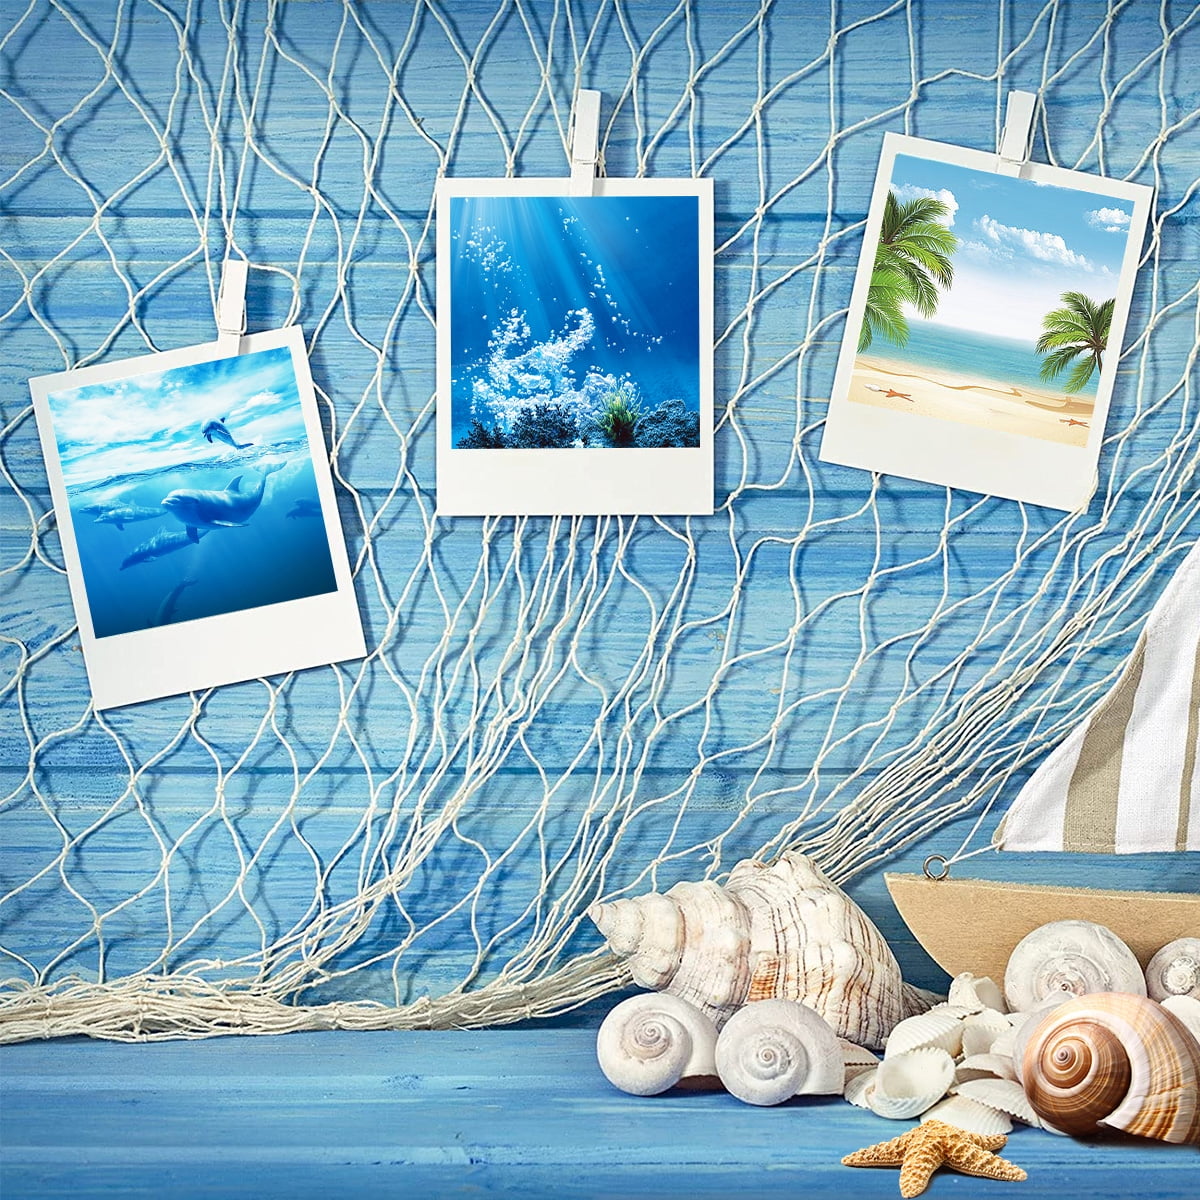 DIY Mediterranean Style Hanging Photo Display Frame Fishing Net